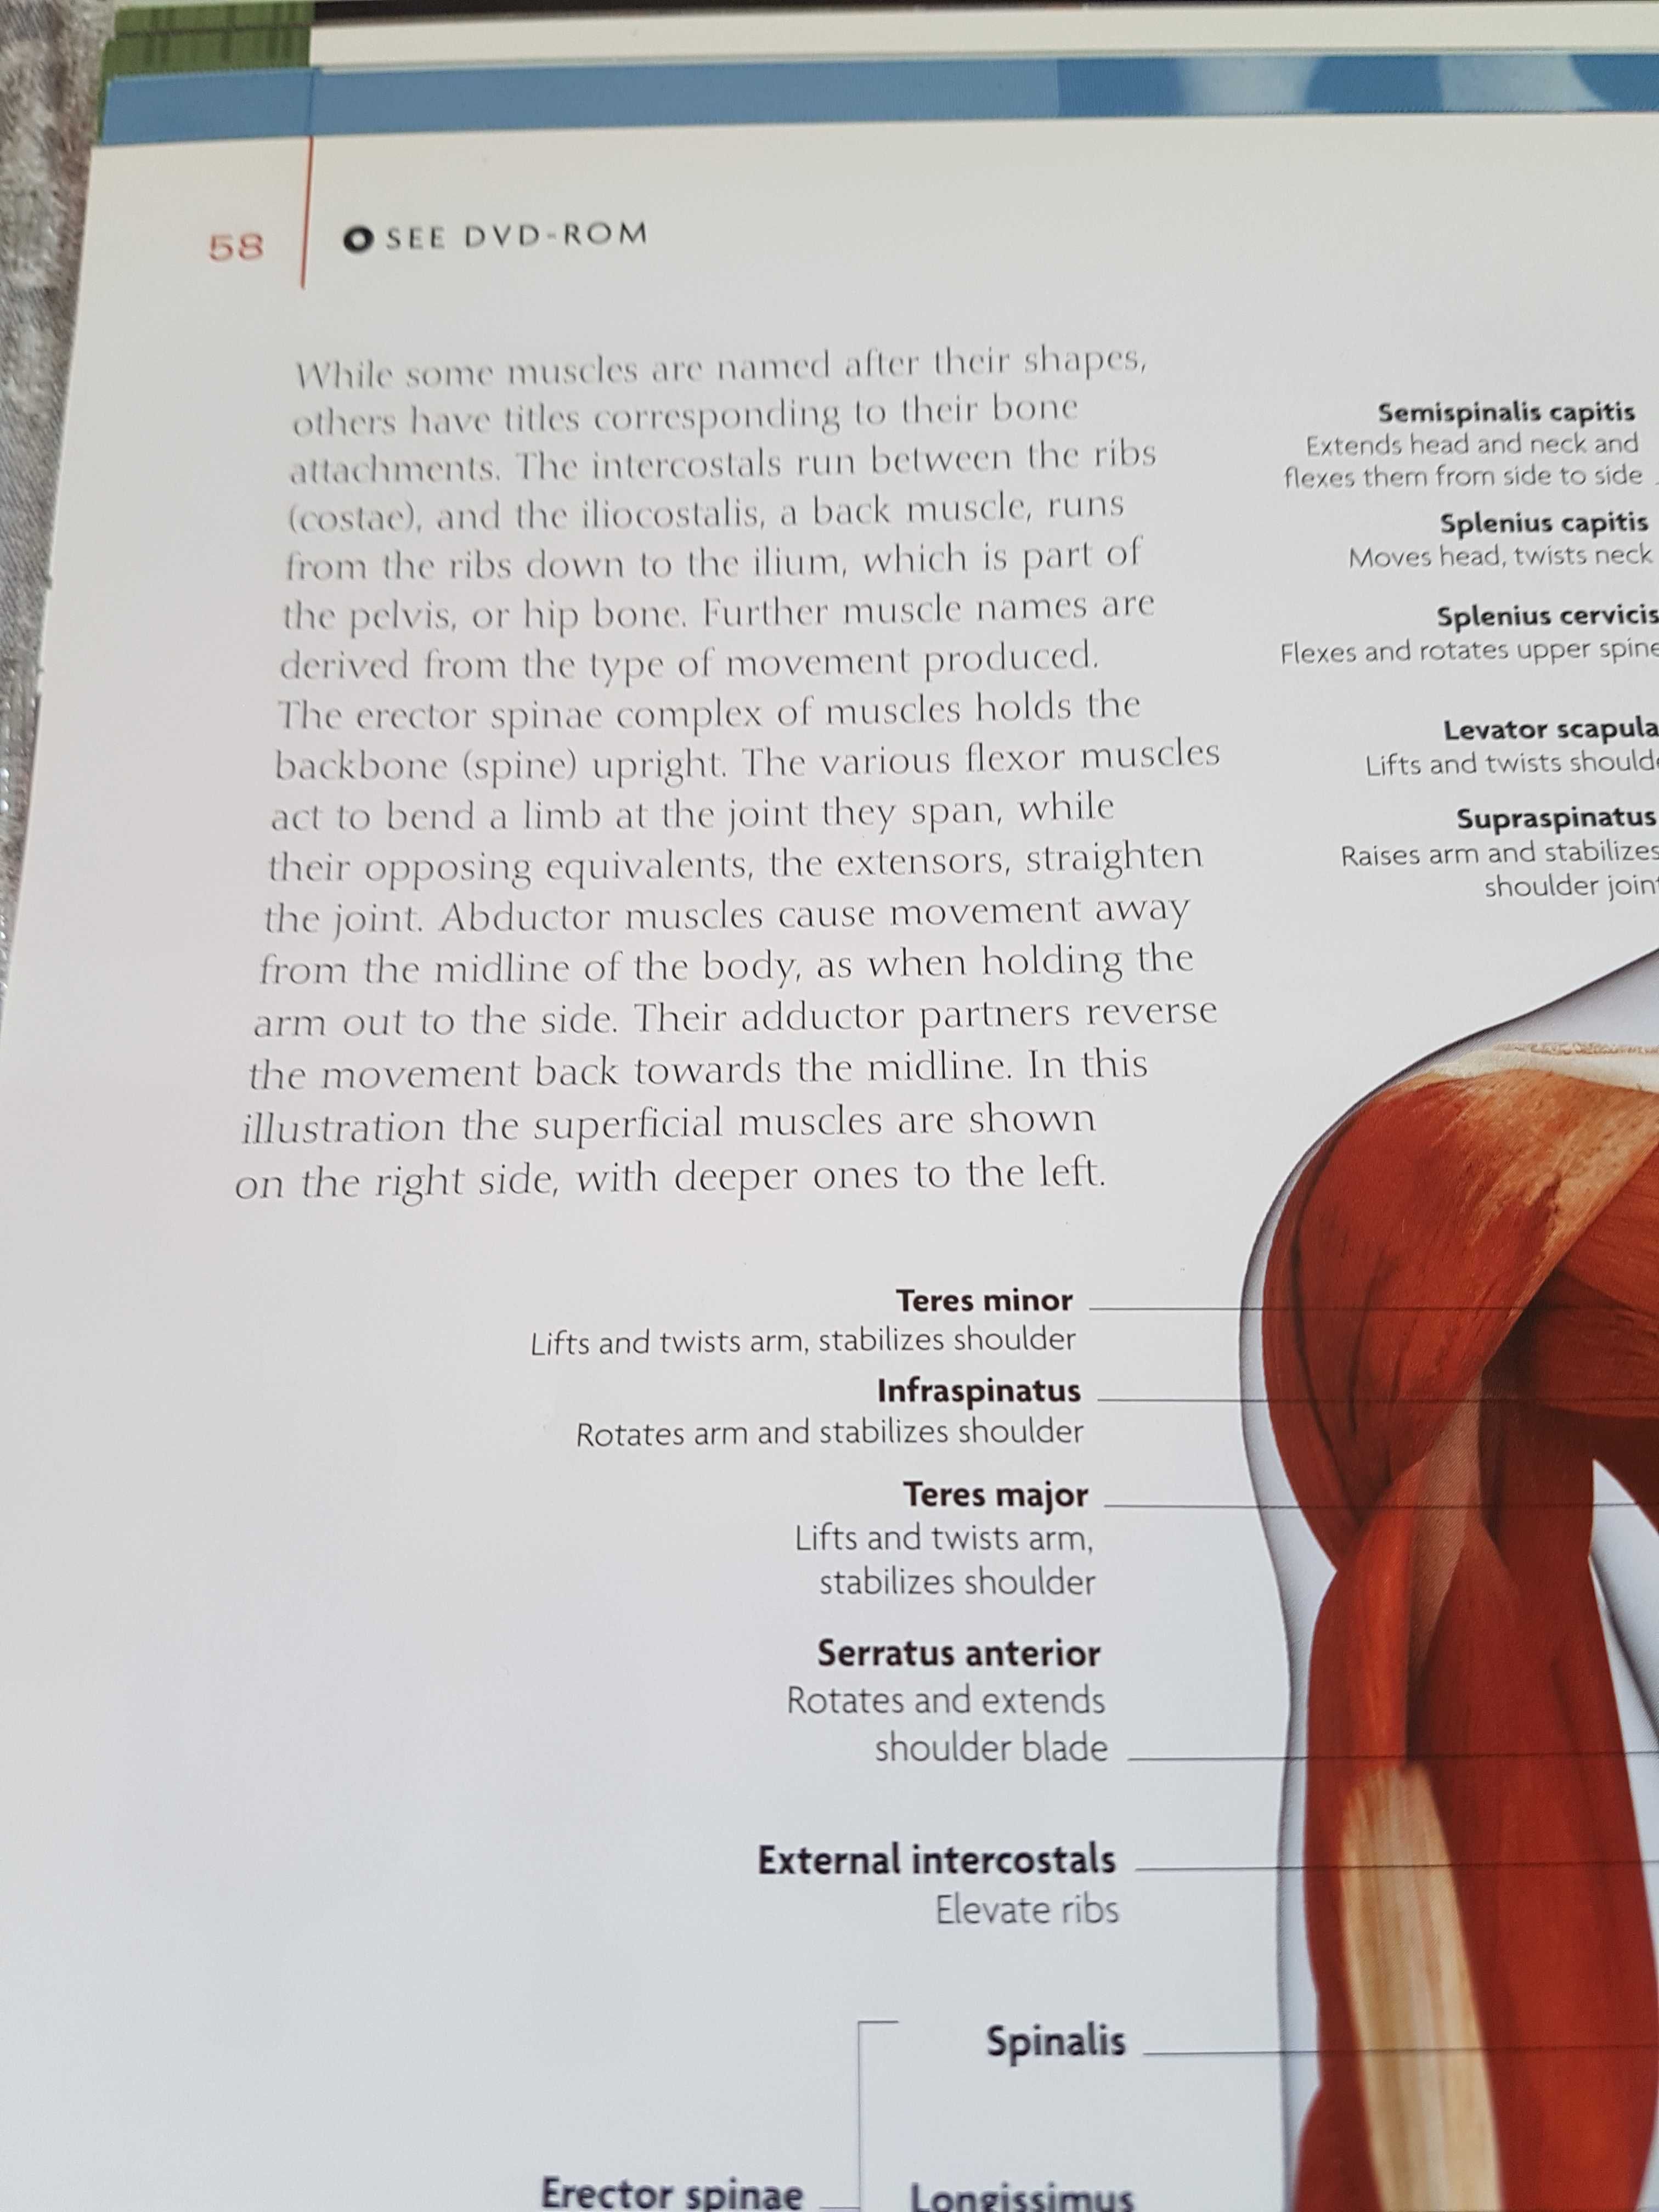 Album anatomii w języku angielskim.